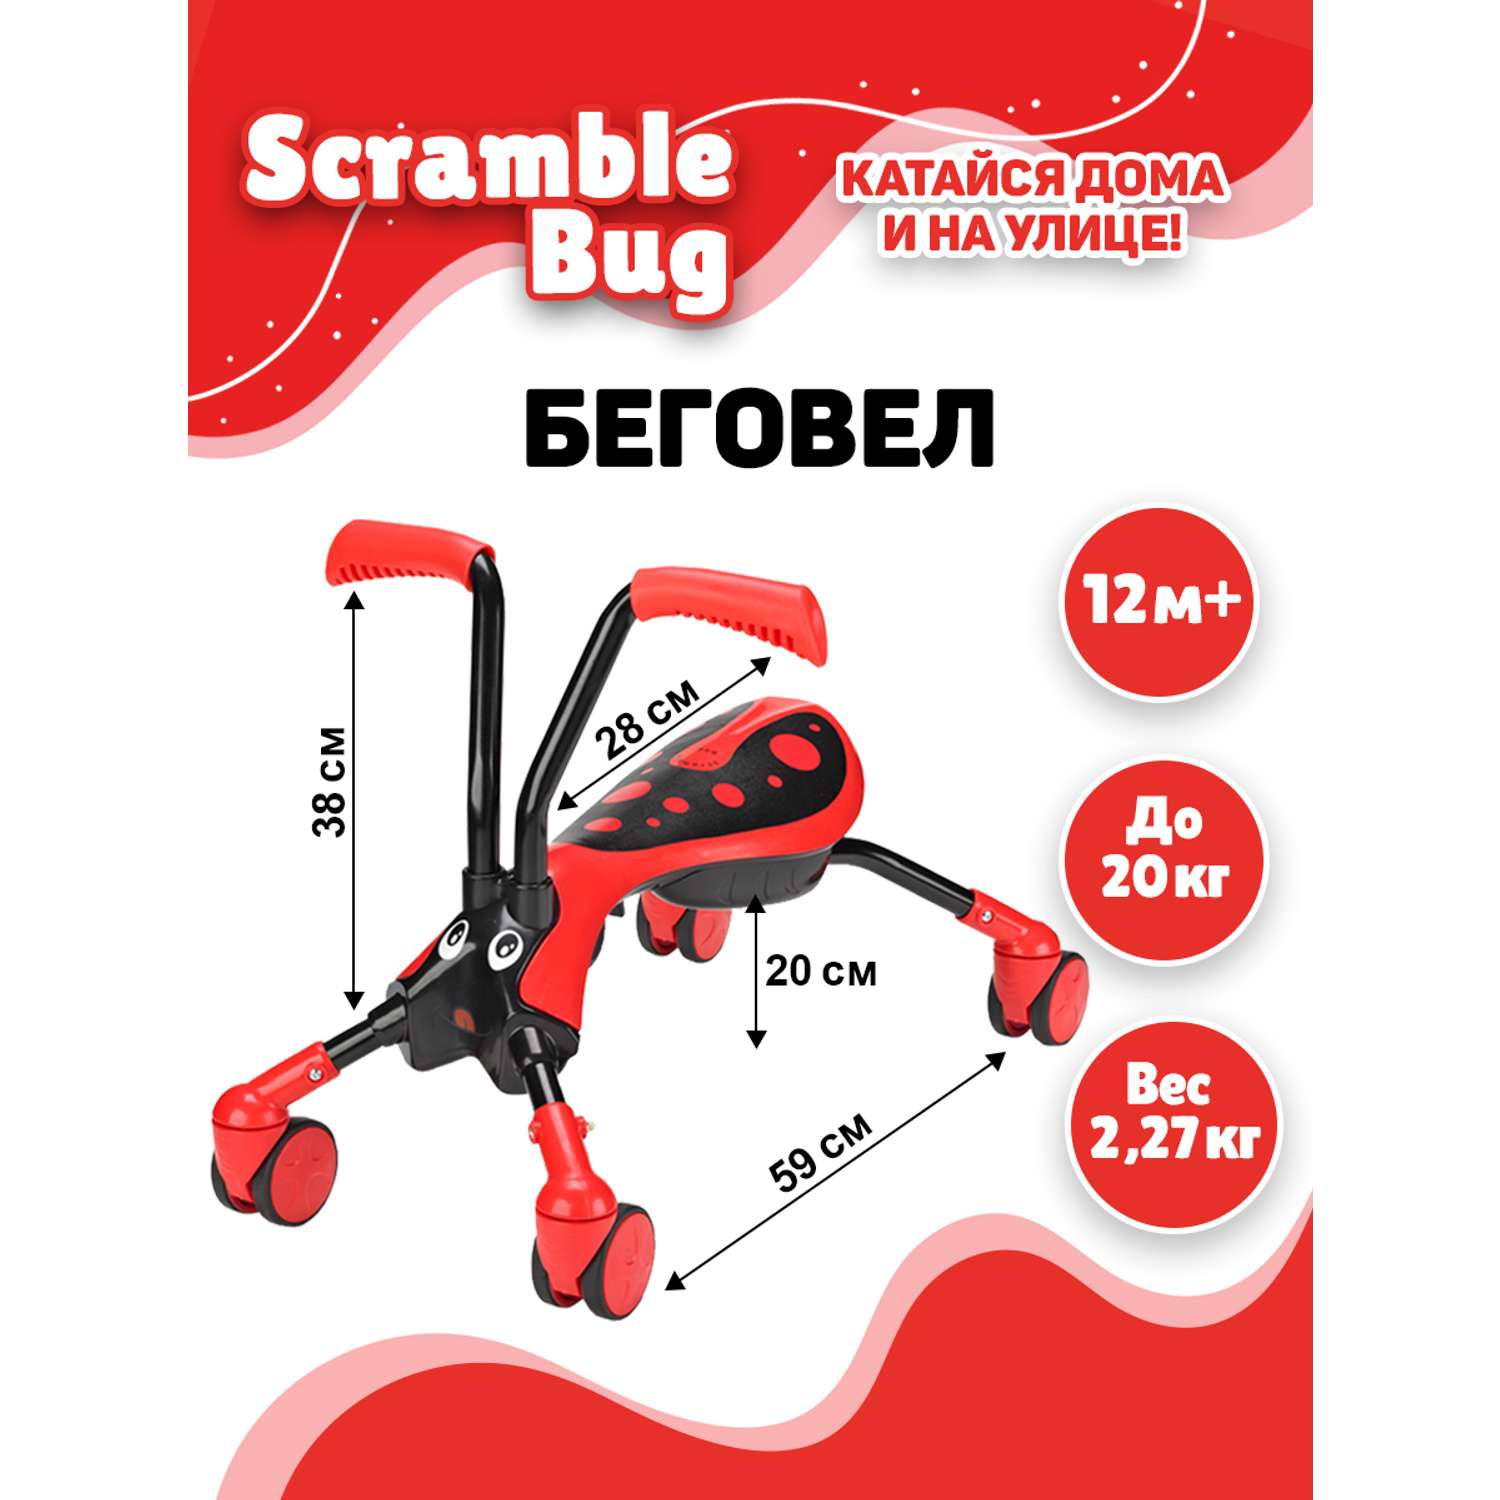 Беговел Scramble Bug трансформер четырехколесный Жук - фото 5